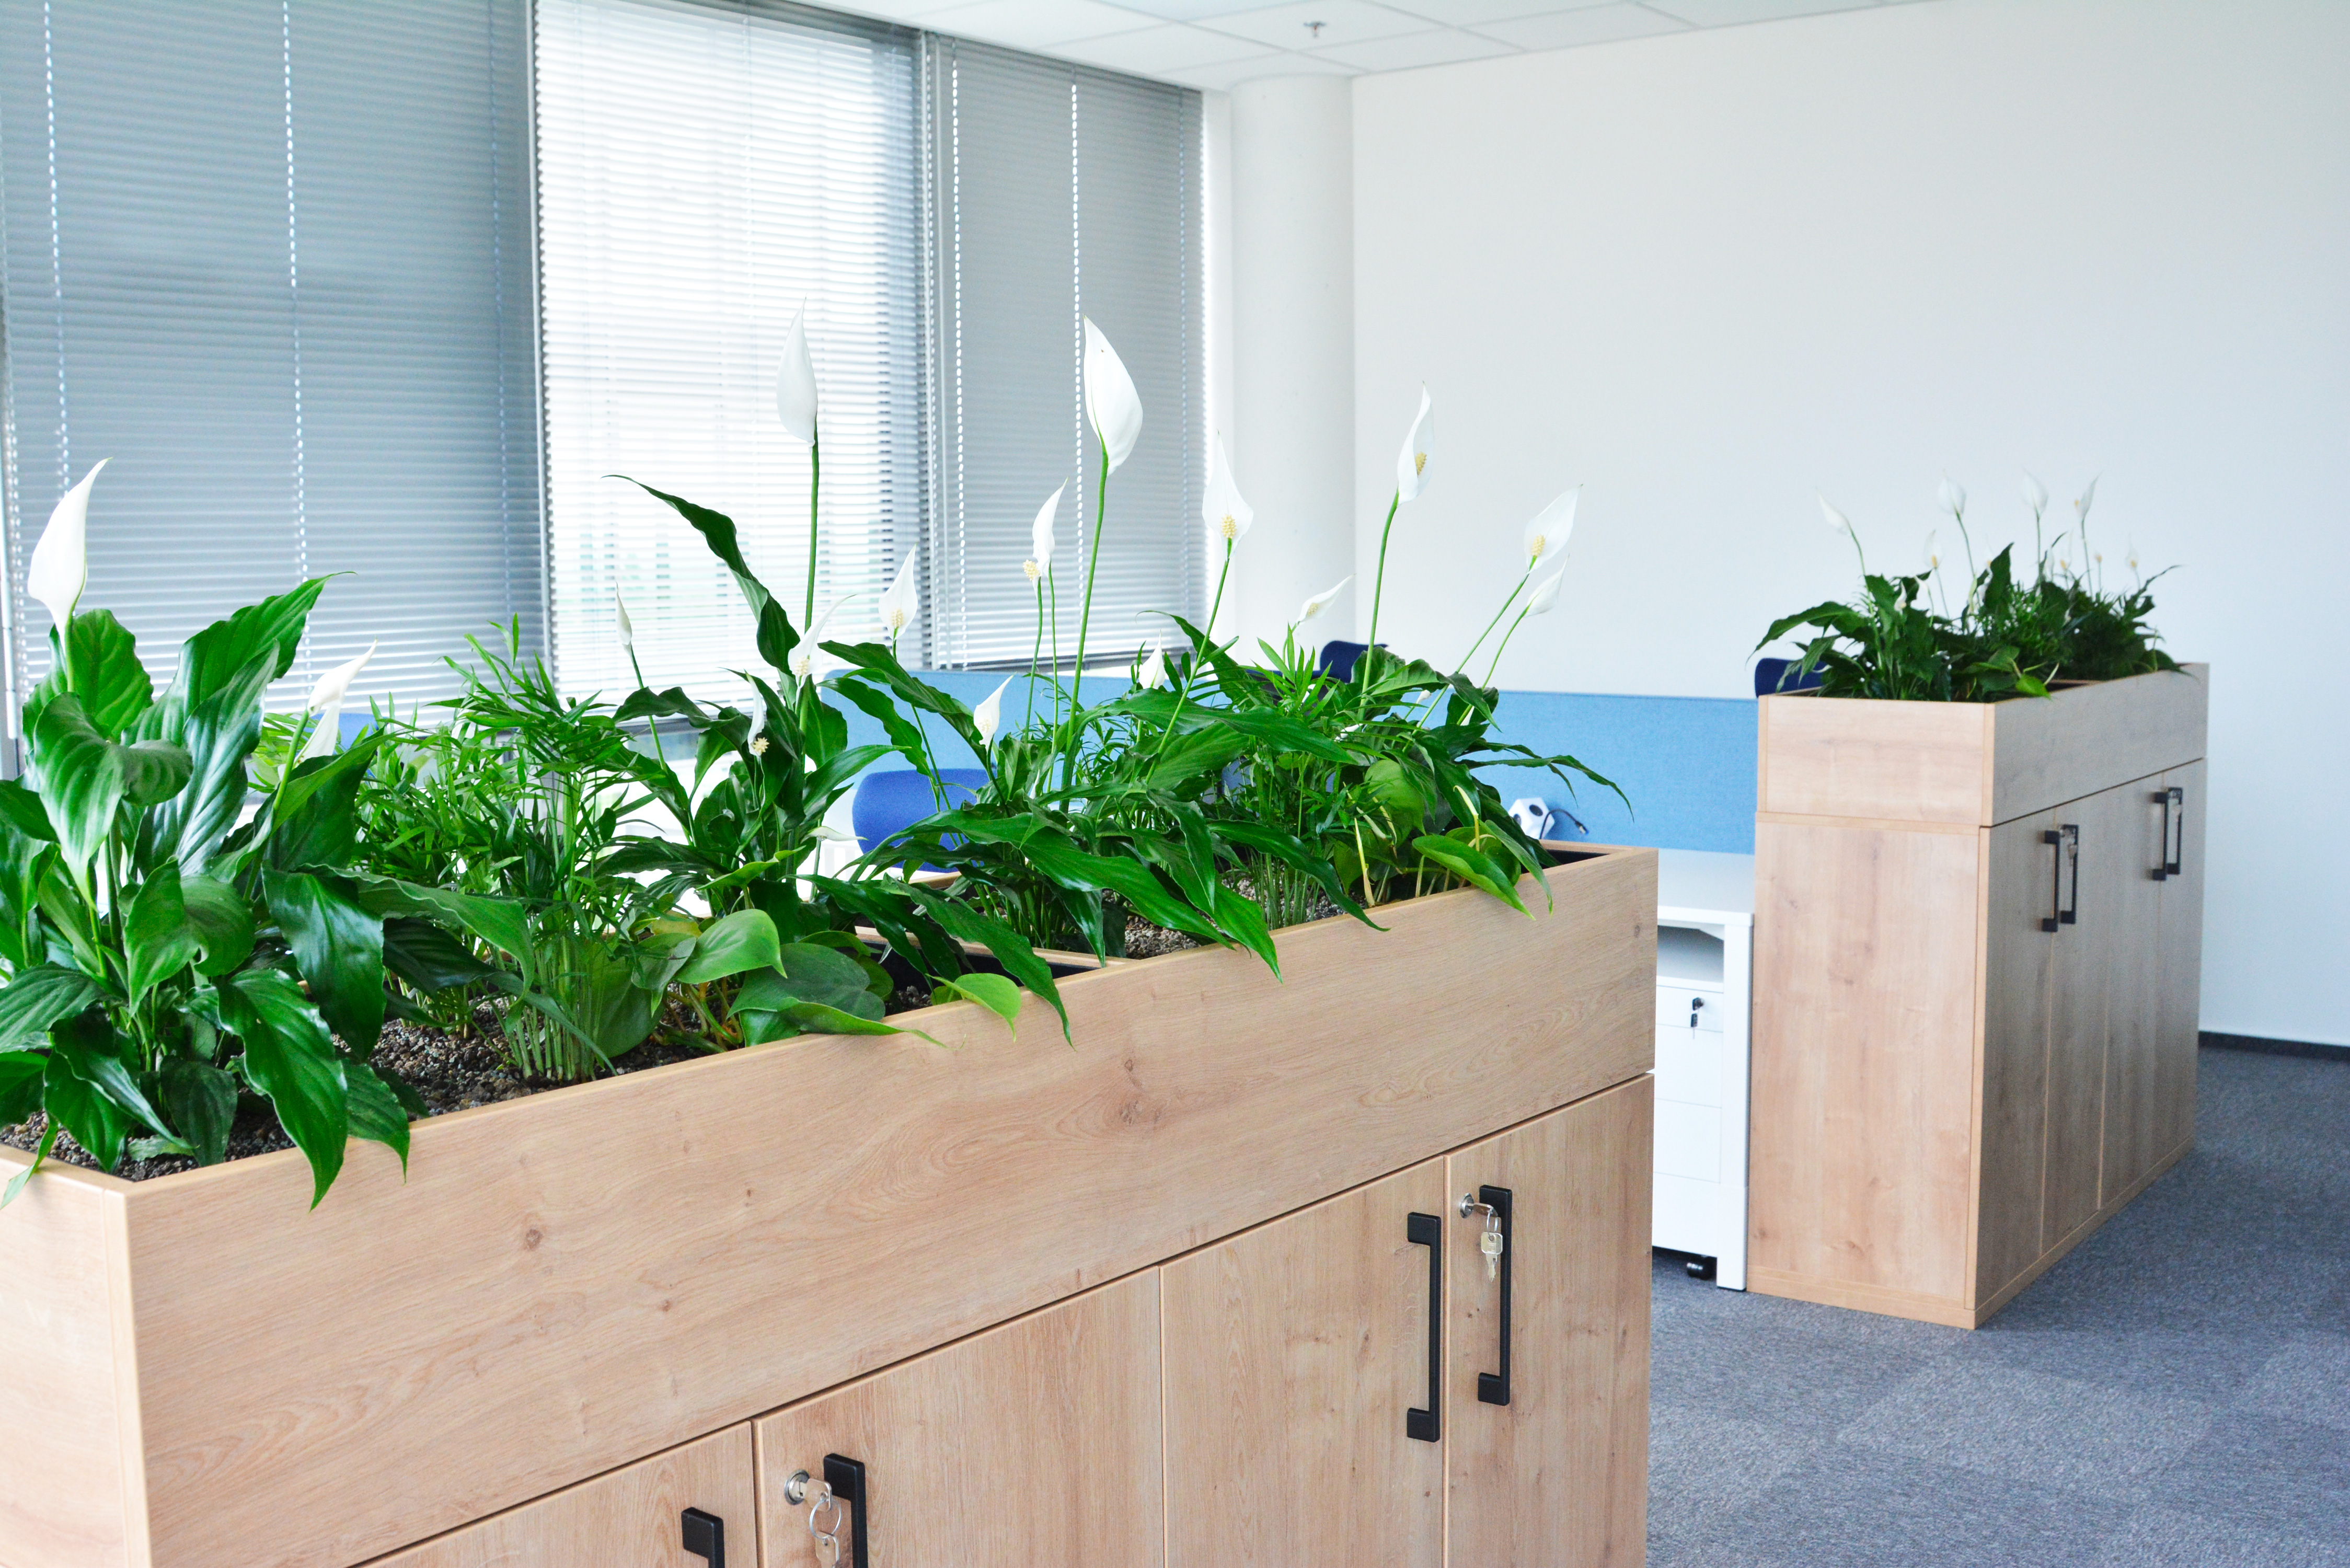 Nábytek v interiéru kanceláře osázený rostlinami